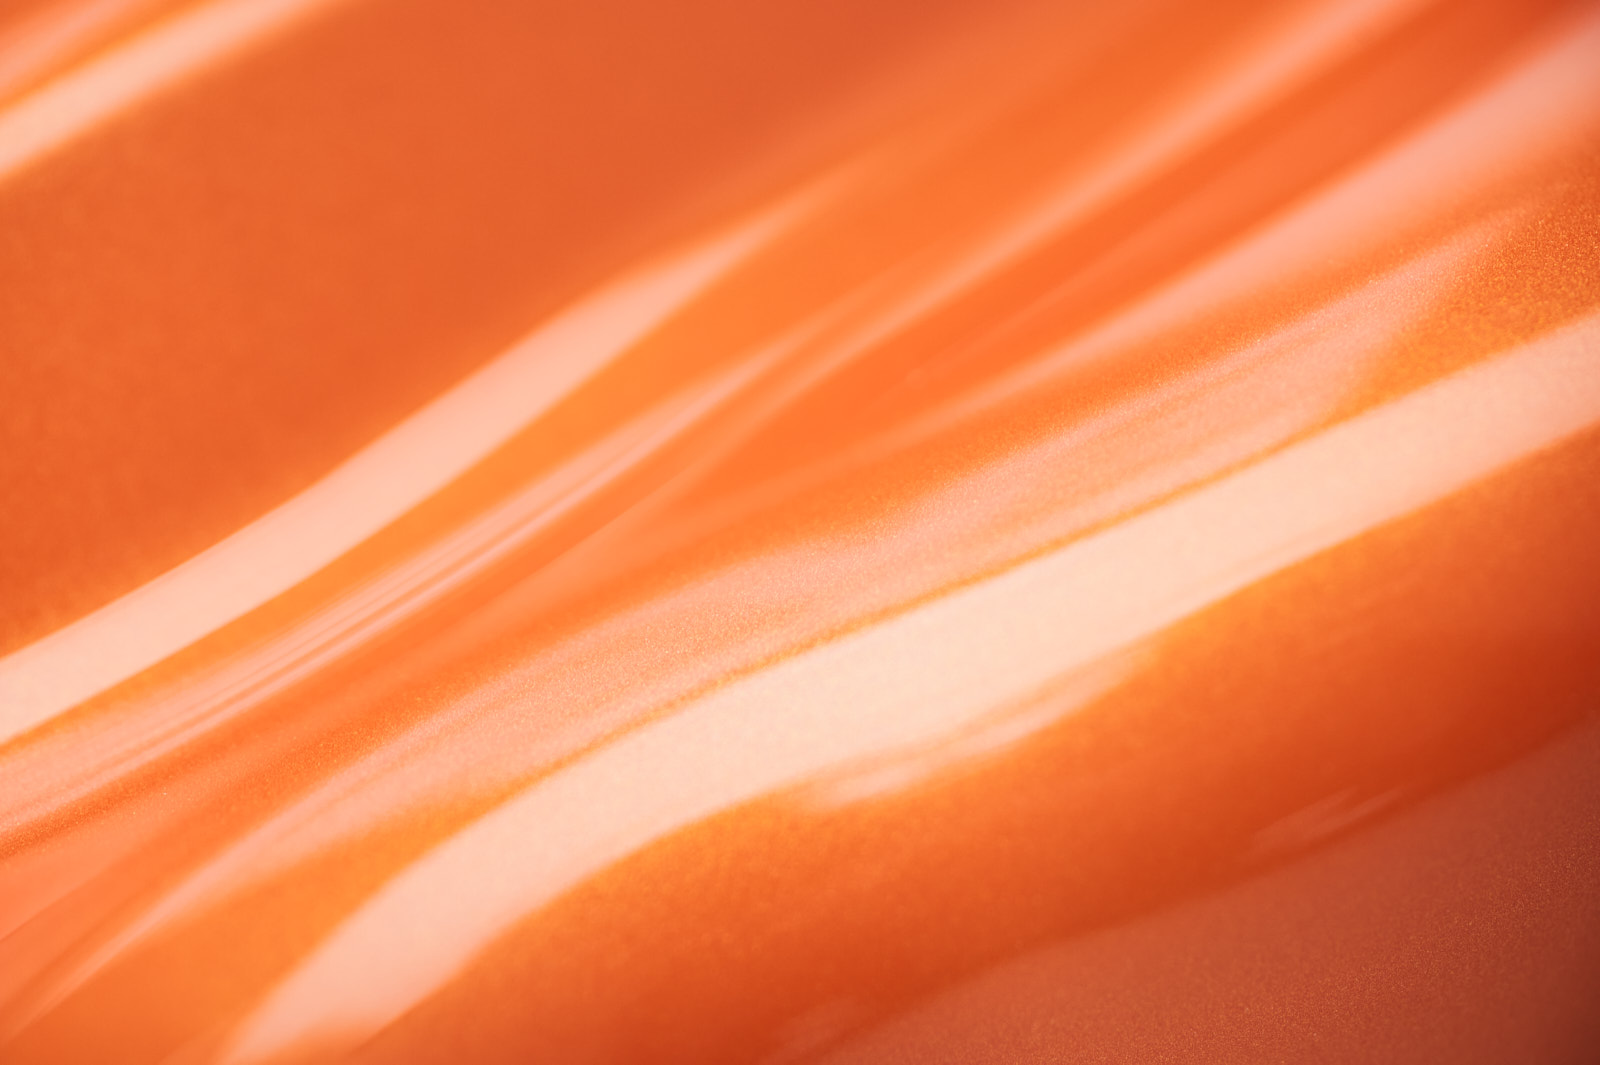 Detailaufnahme der Lichtreklektion in einer orange lackierten Oberfläche